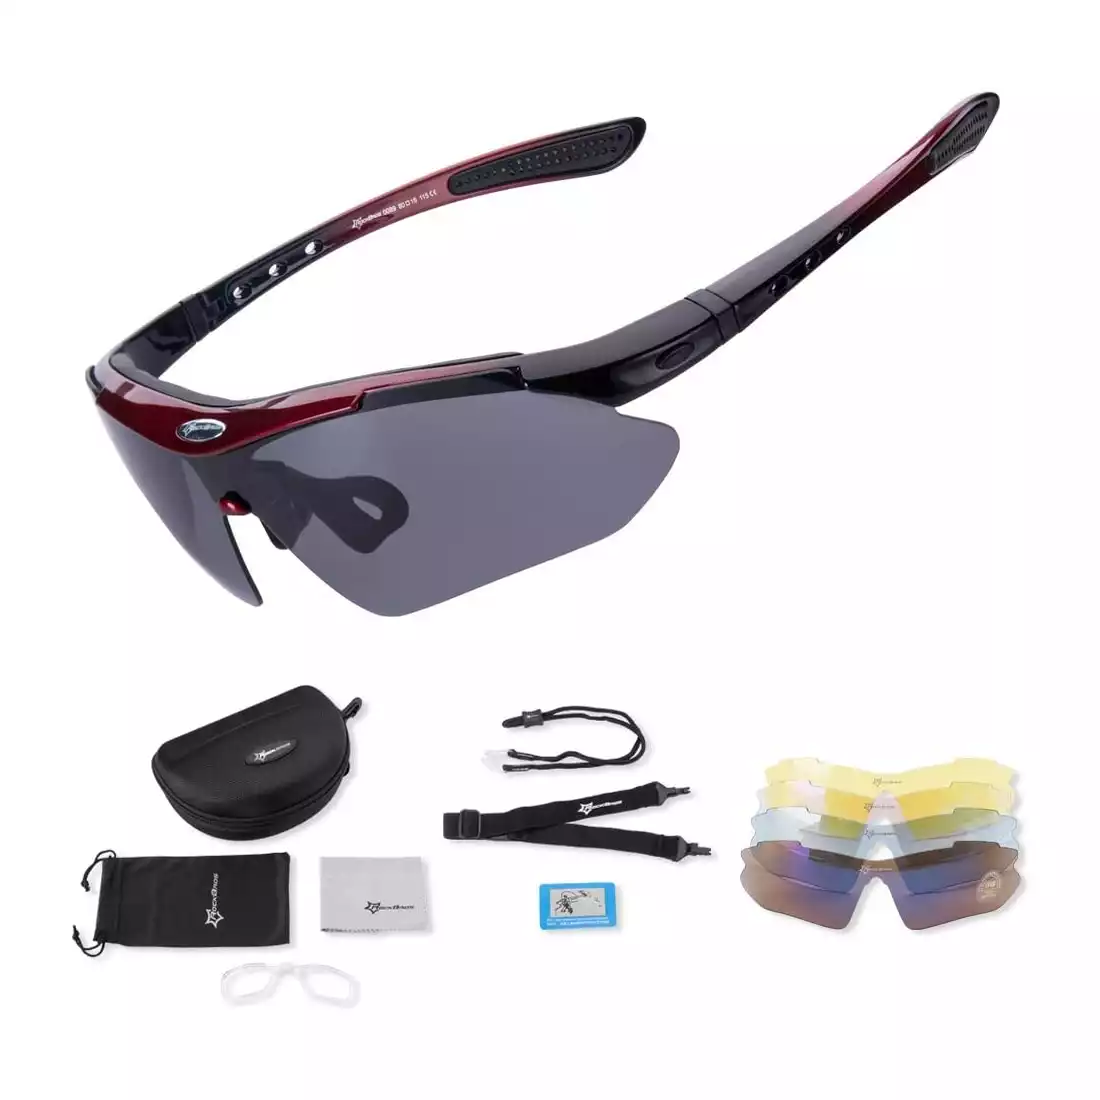 RockBros 10001 okulary rowerowe / sportowe z polaryzacją 5 soczewek wymiennych białe